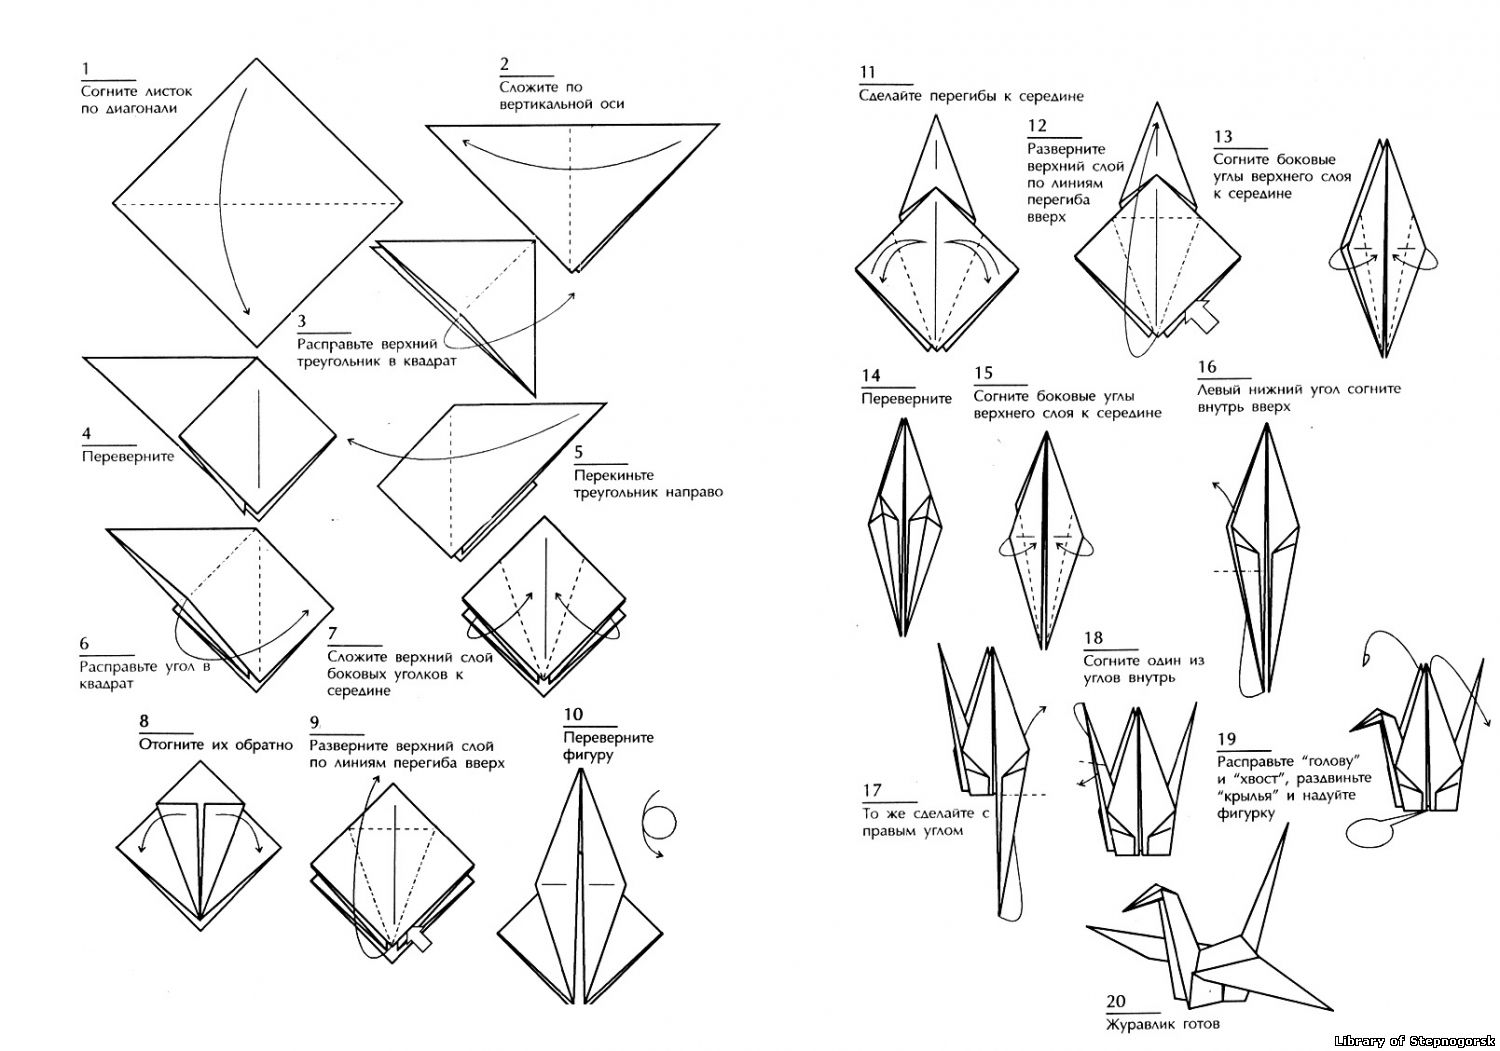 Сделать журавлика оригами пошаговая инструкция для начинающих. Оригами из бумаги Журавлик схема для начинающих. Схема сборки журавлика оригами. Оригами из бумаги для начинающих Журавлик схема пошагово. Японский Журавлик схема сборки.